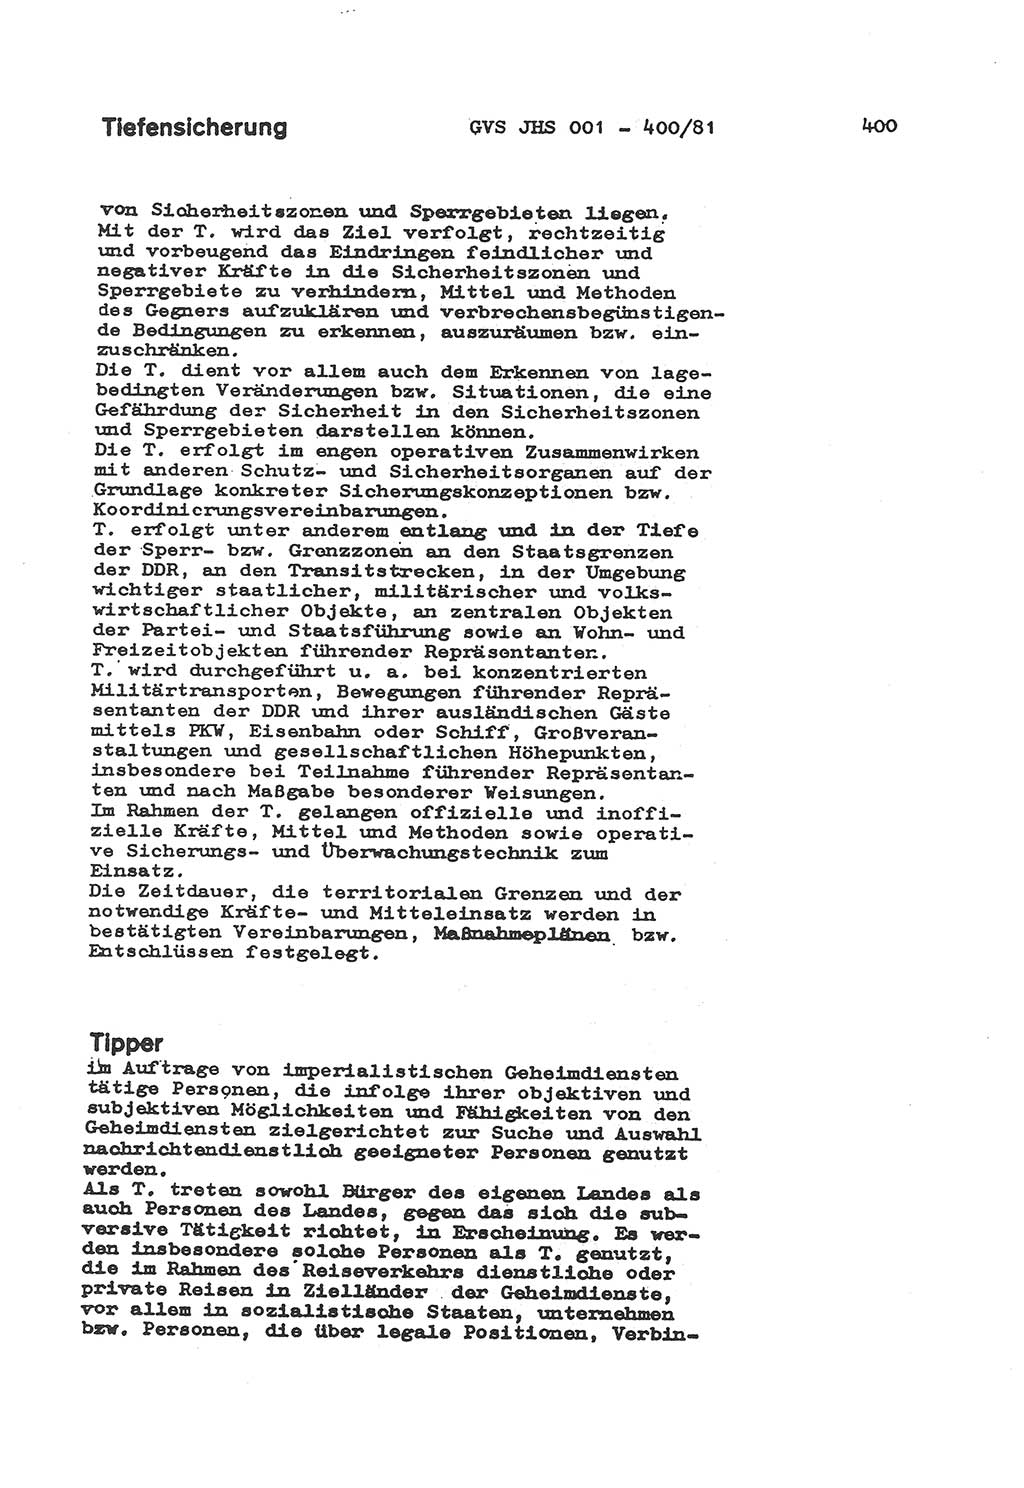 Wörterbuch der politisch-operativen Arbeit, Ministerium für Staatssicherheit (MfS) [Deutsche Demokratische Republik (DDR)], Juristische Hochschule (JHS), Geheime Verschlußsache (GVS) o001-400/81, Potsdam 1985, Blatt 400 (Wb. pol.-op. Arb. MfS DDR JHS GVS o001-400/81 1985, Bl. 400)